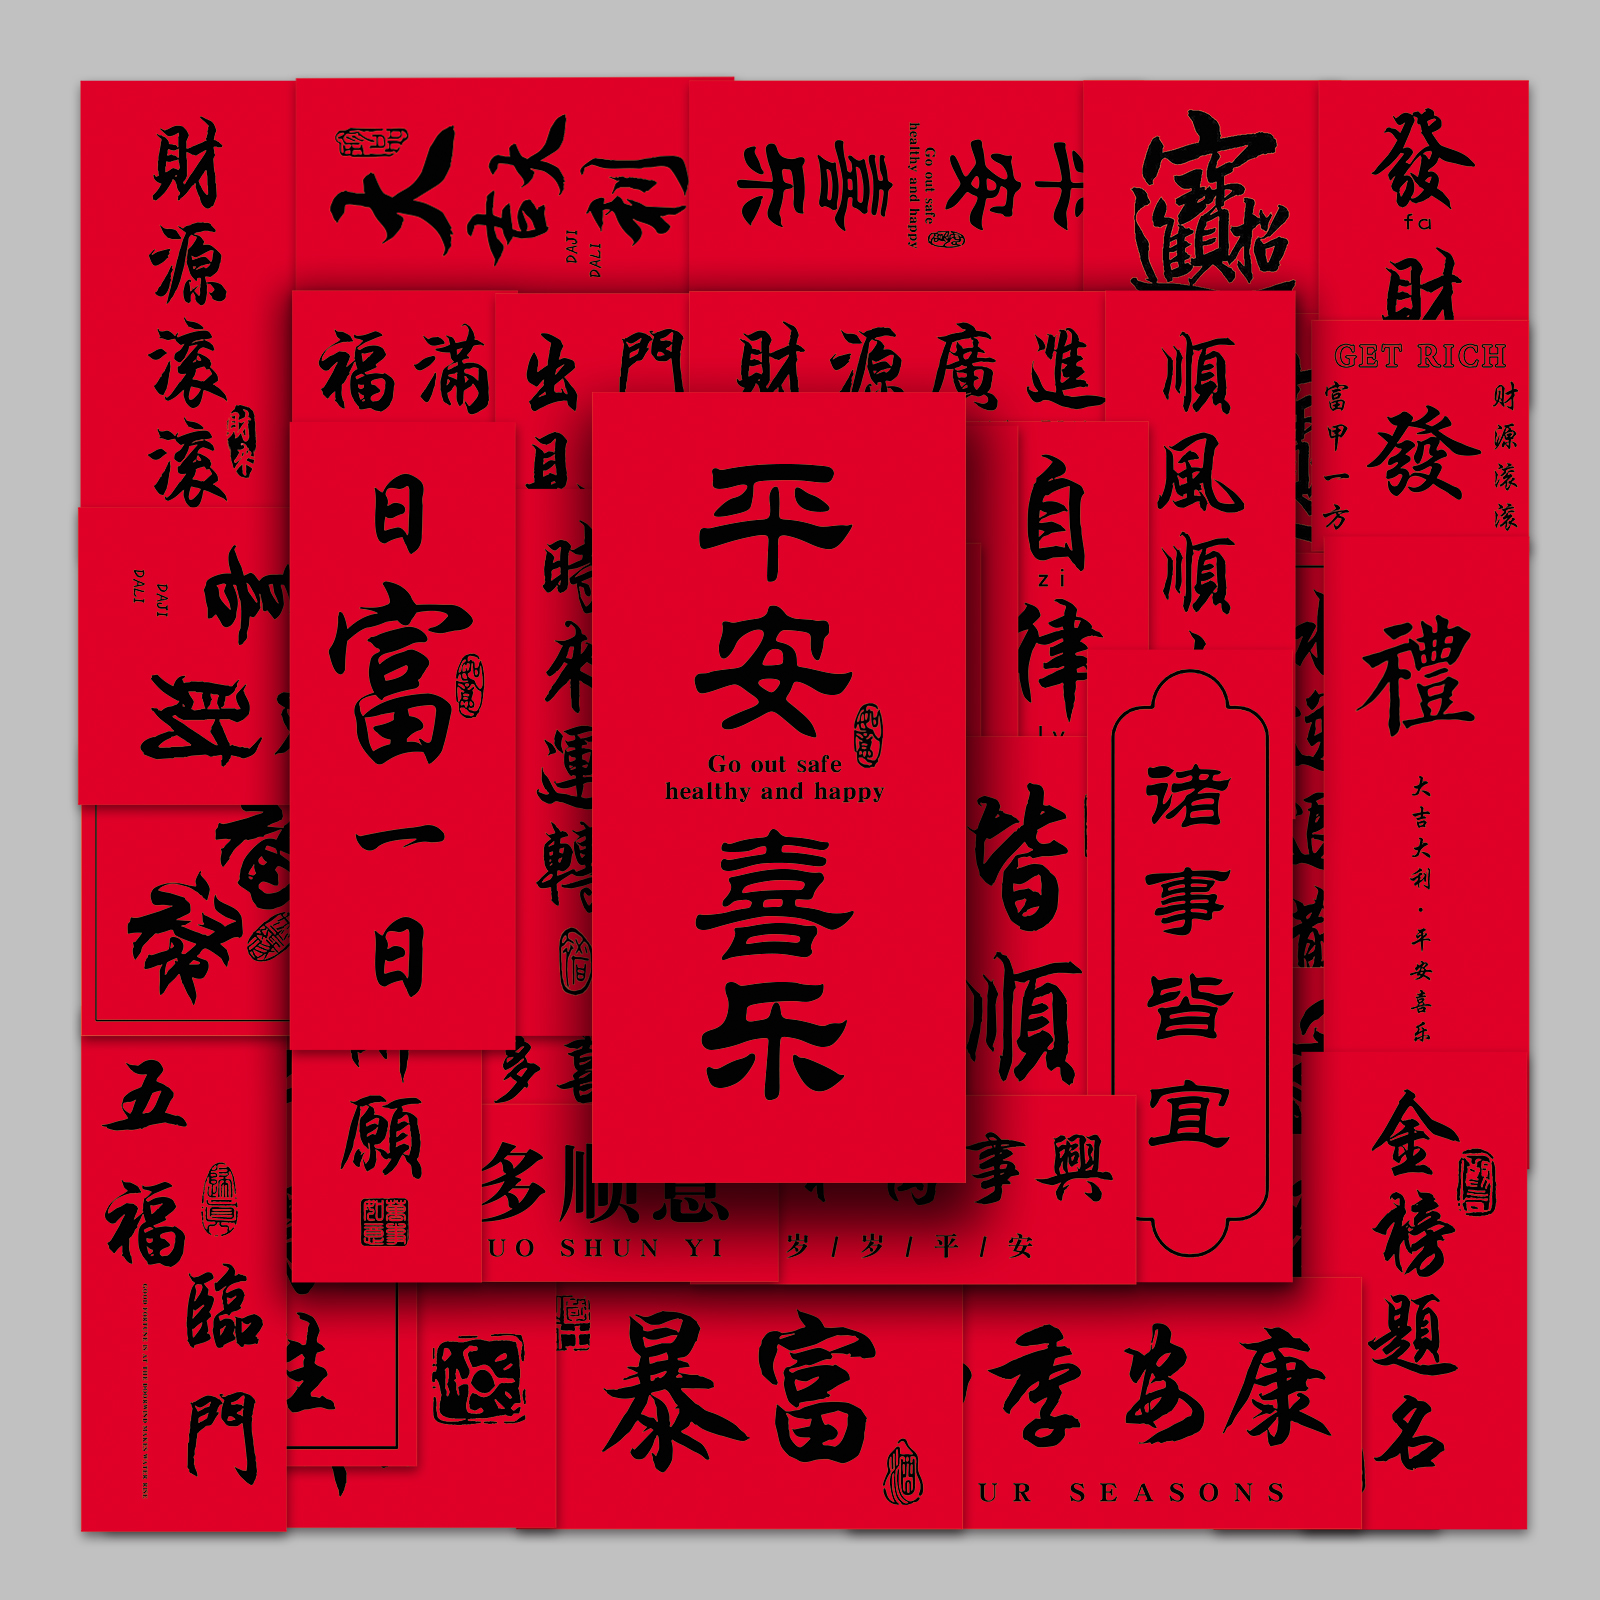 54张中国红色古风汉字对联传统创意祝福短语DIY奶茶杯手机壳贴纸